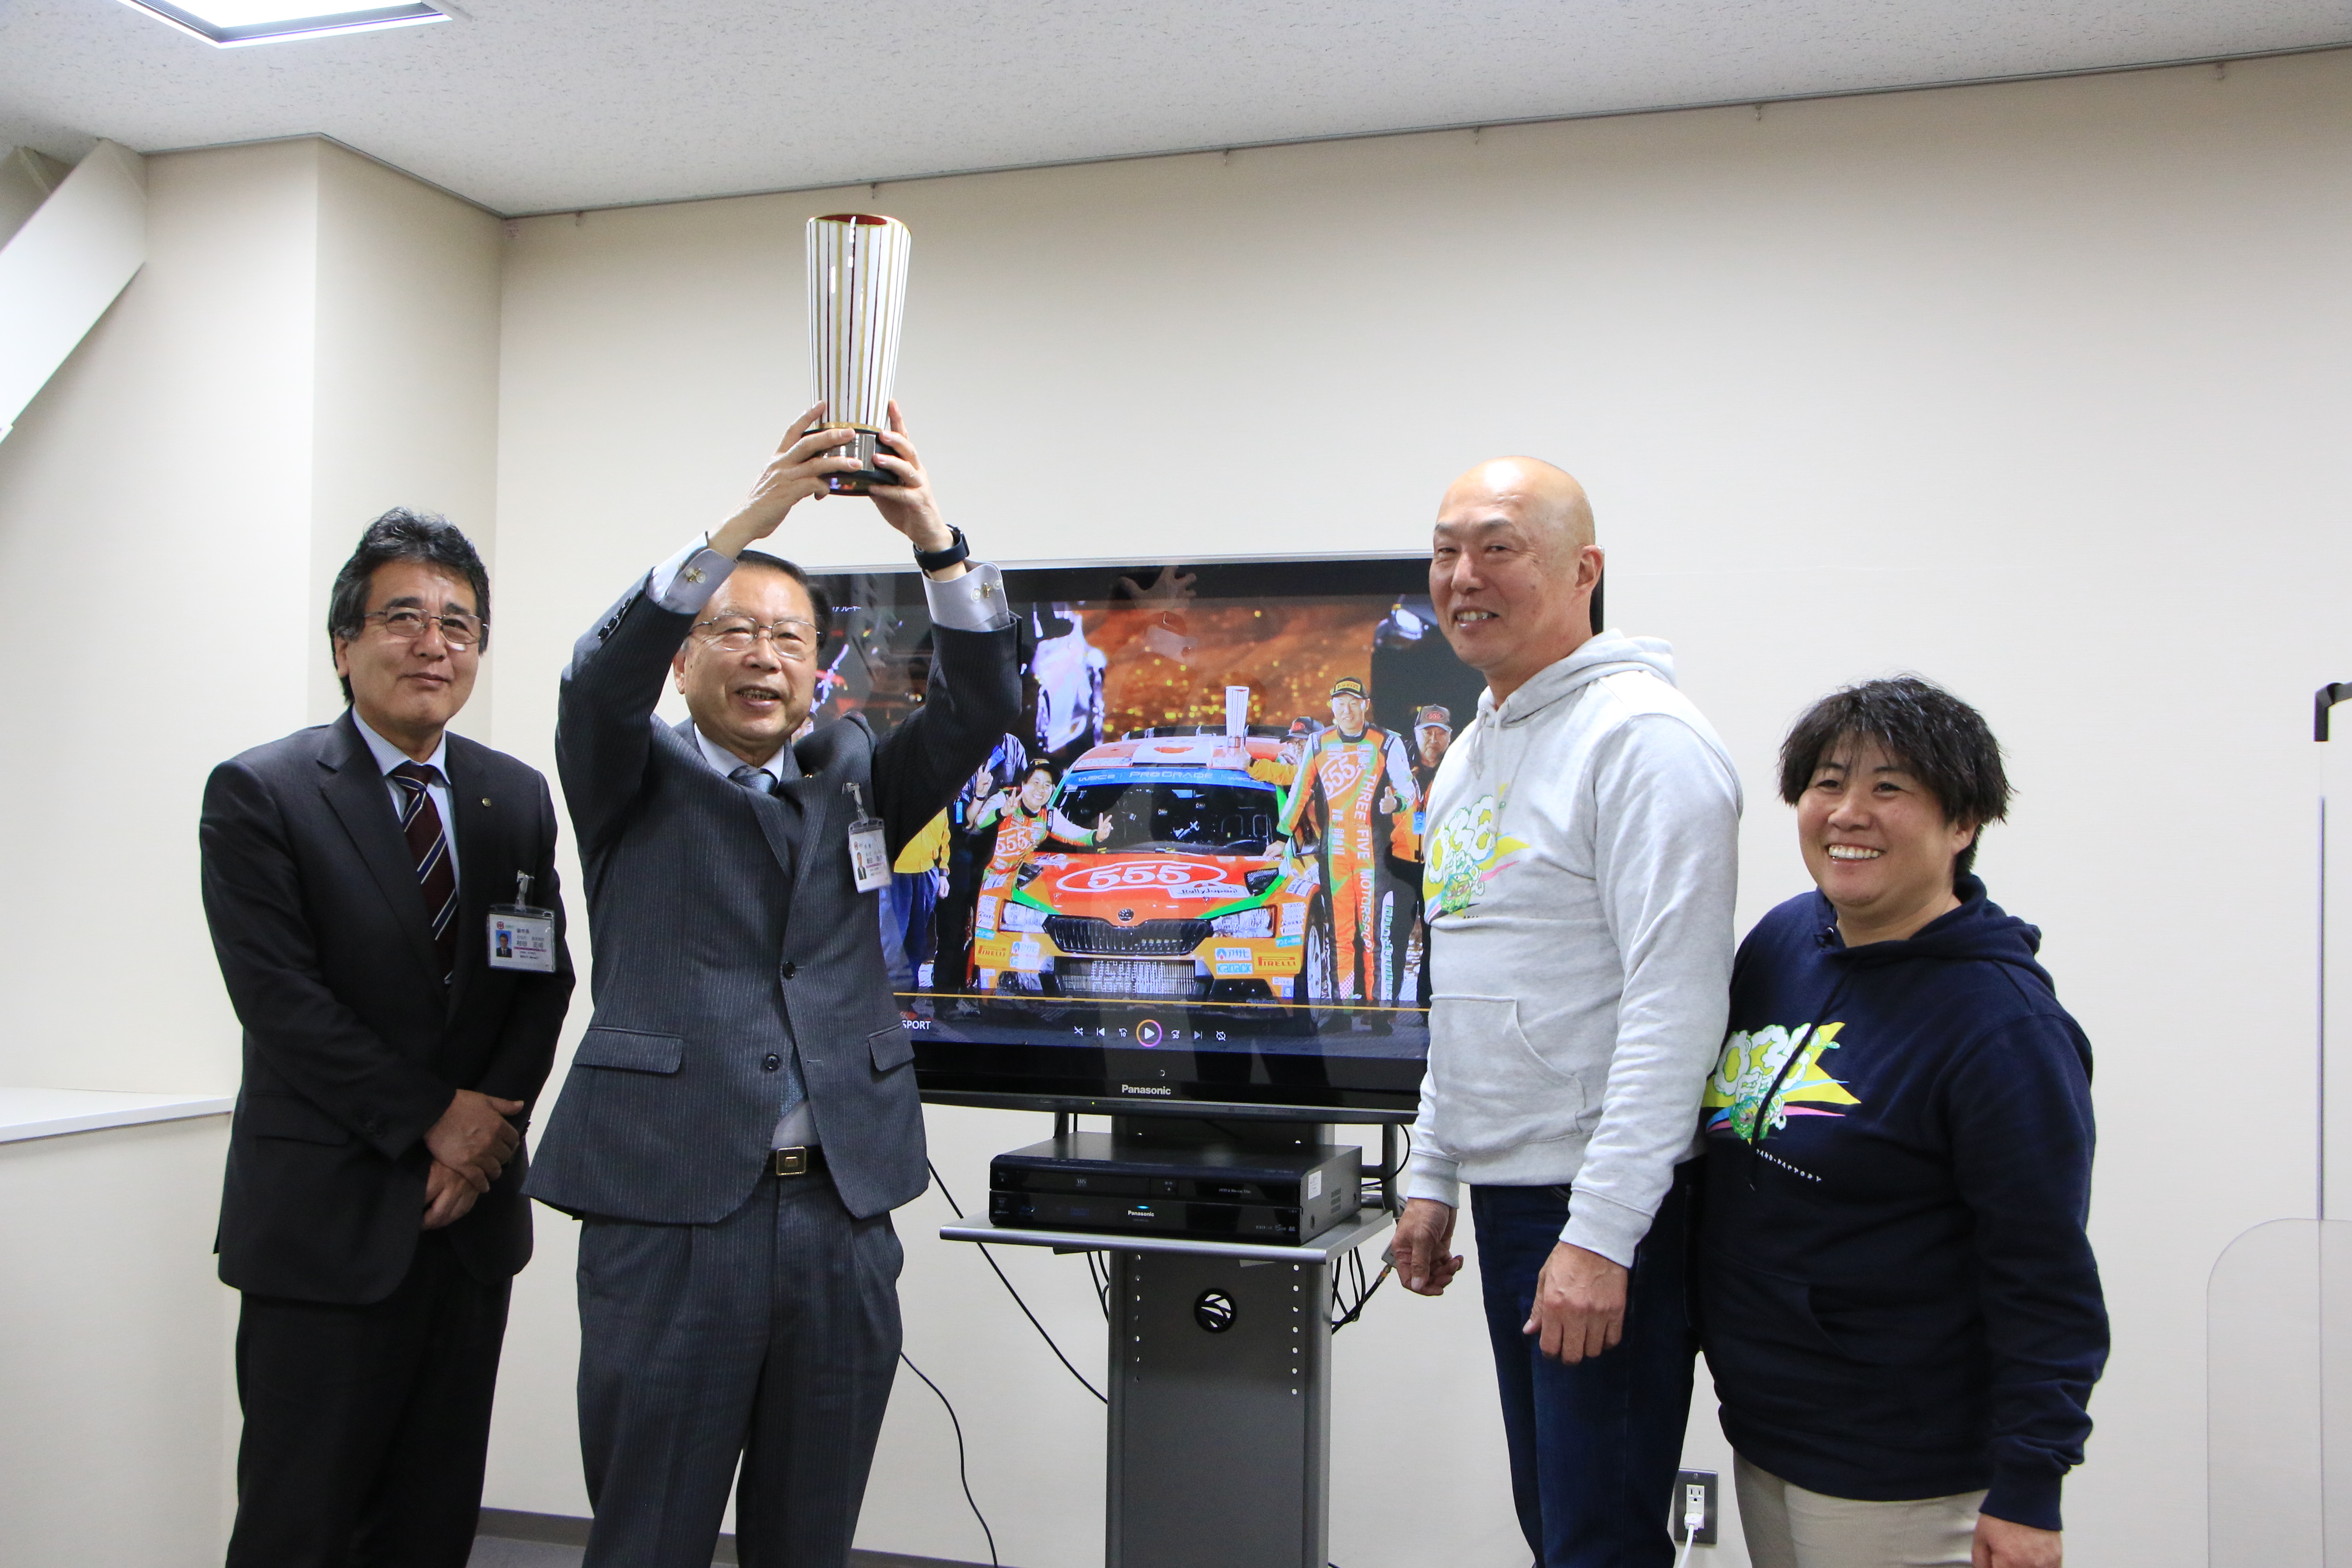 福永選手、齊田選手とともに受賞を喜ぶ市長、副市長